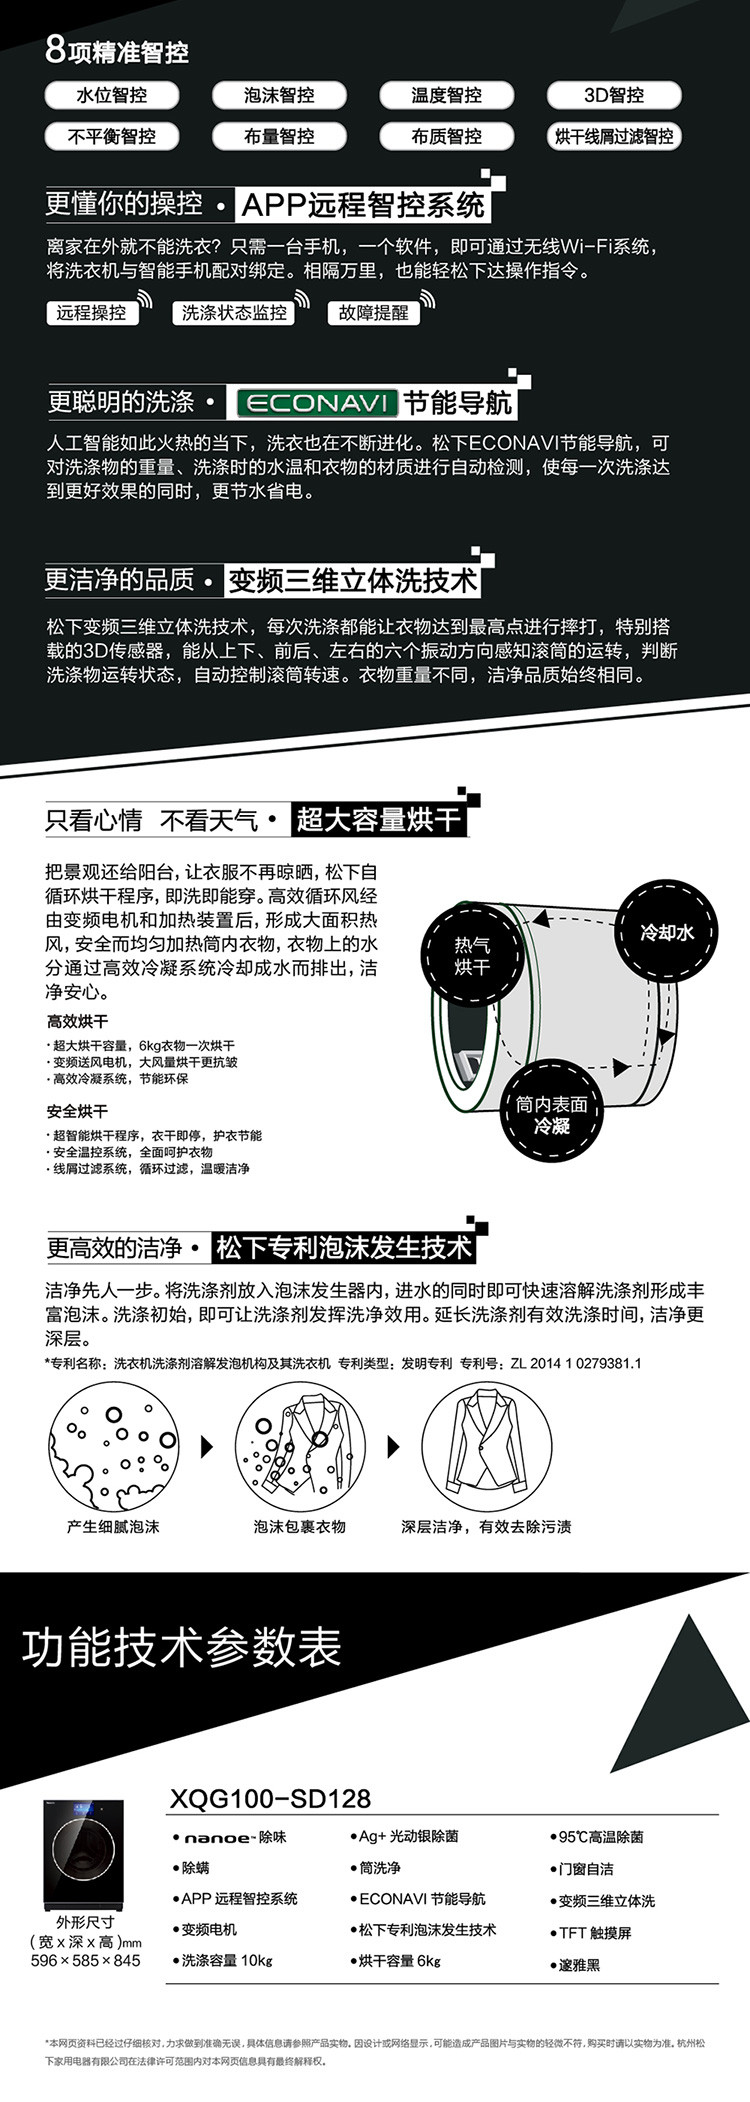 松下/PANASONIC 滚筒洗衣机 10公斤柜式一体化邃雅黑XQG100-SD128